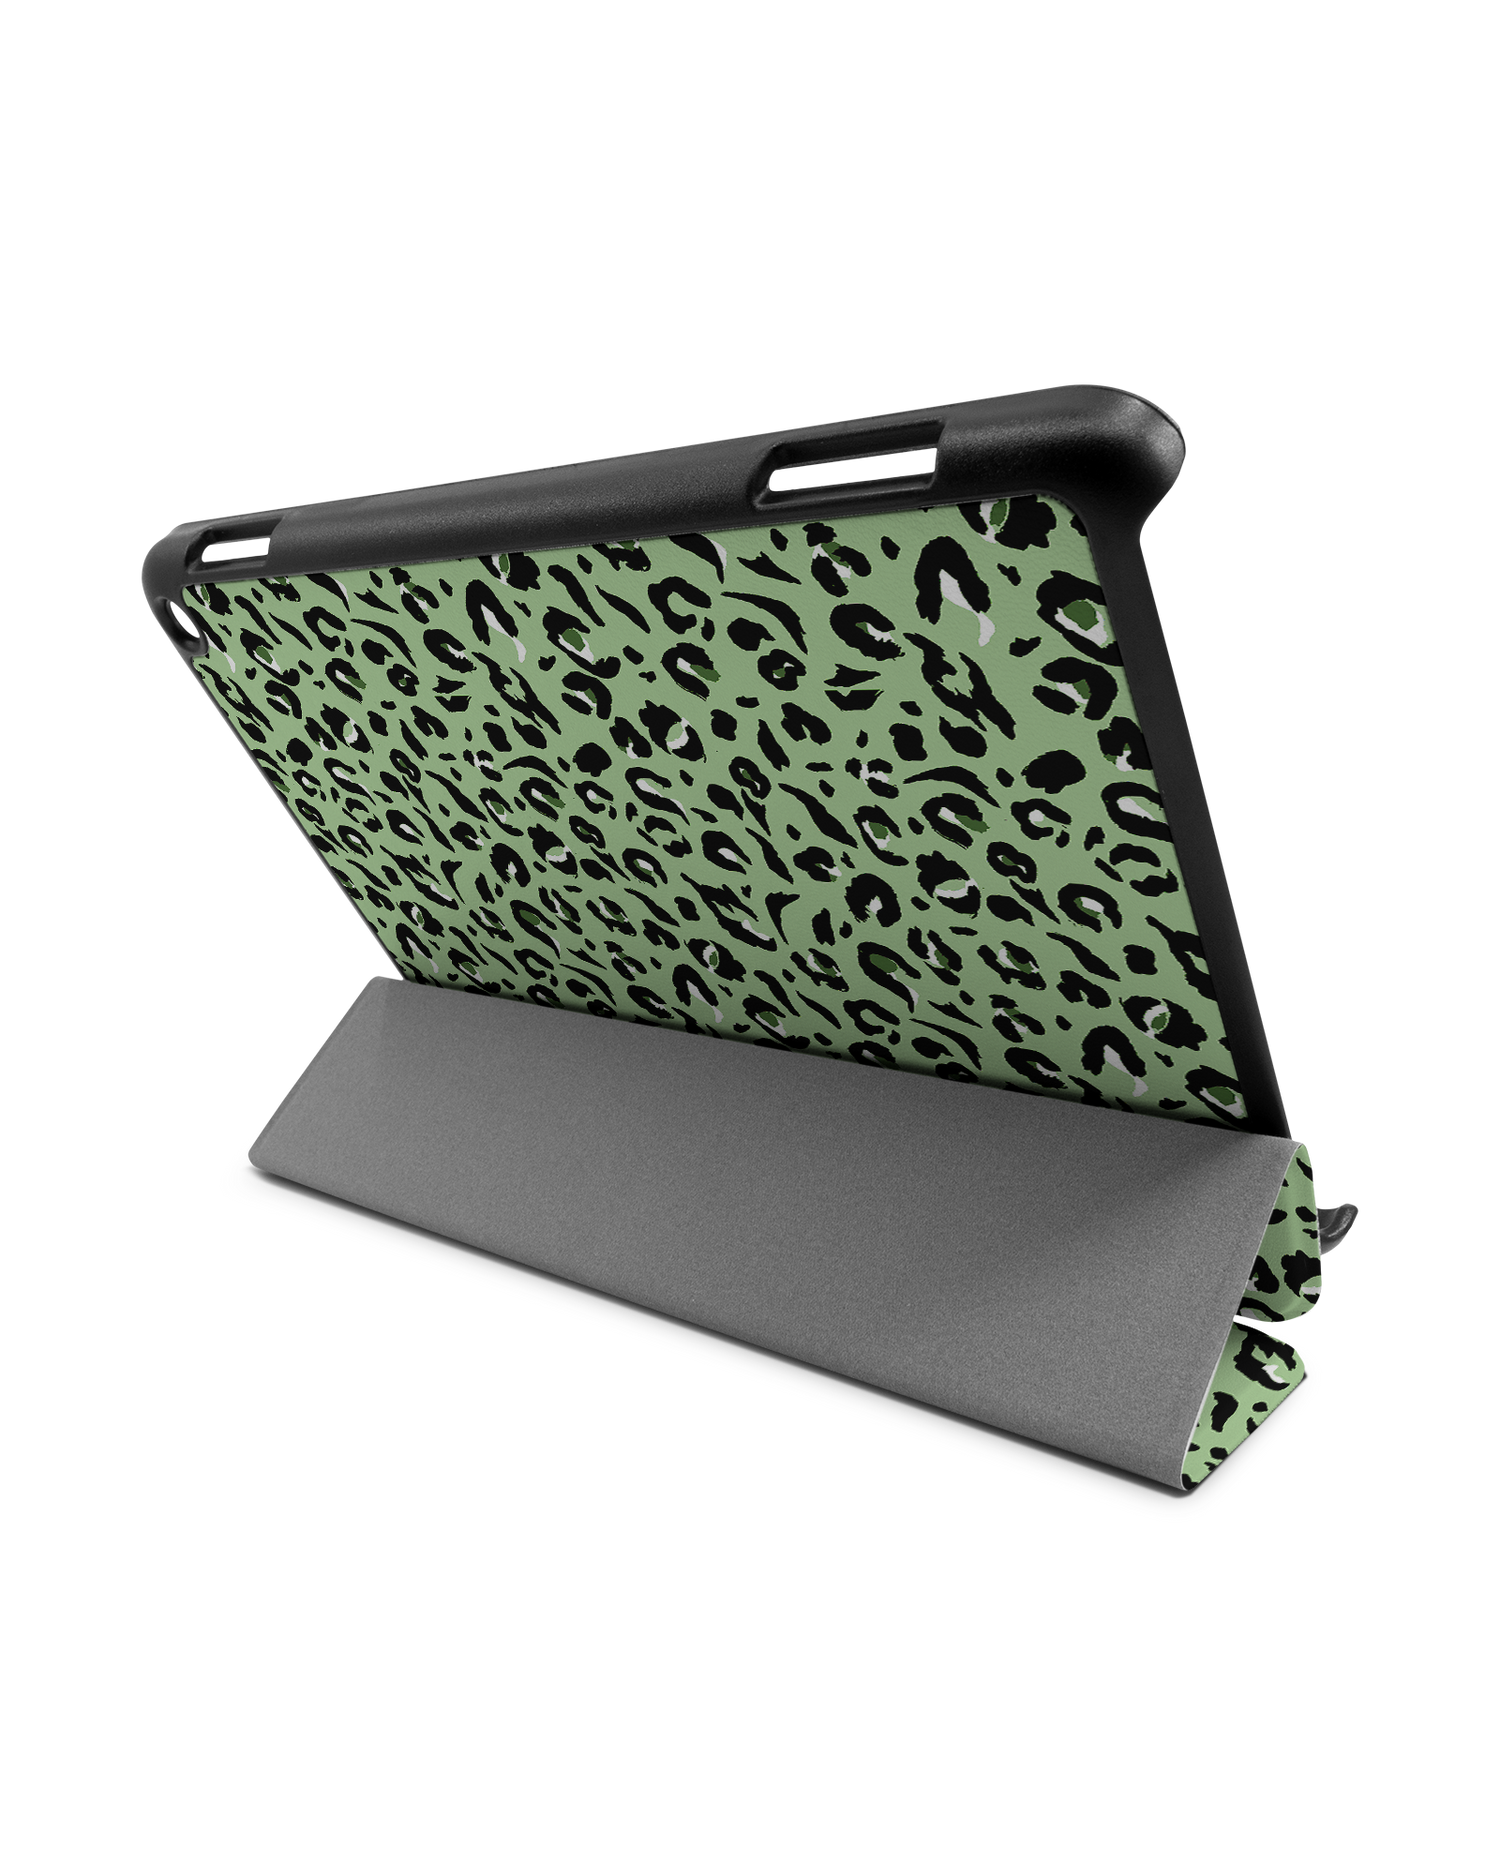 Mint Leopard Tablet Smart Case für Amazon Fire HD 8 (2022), Amazon Fire HD 8 Plus (2022), Amazon Fire HD 8 (2020), Amazon Fire HD 8 Plus (2020): Aufgestellt im Querformat